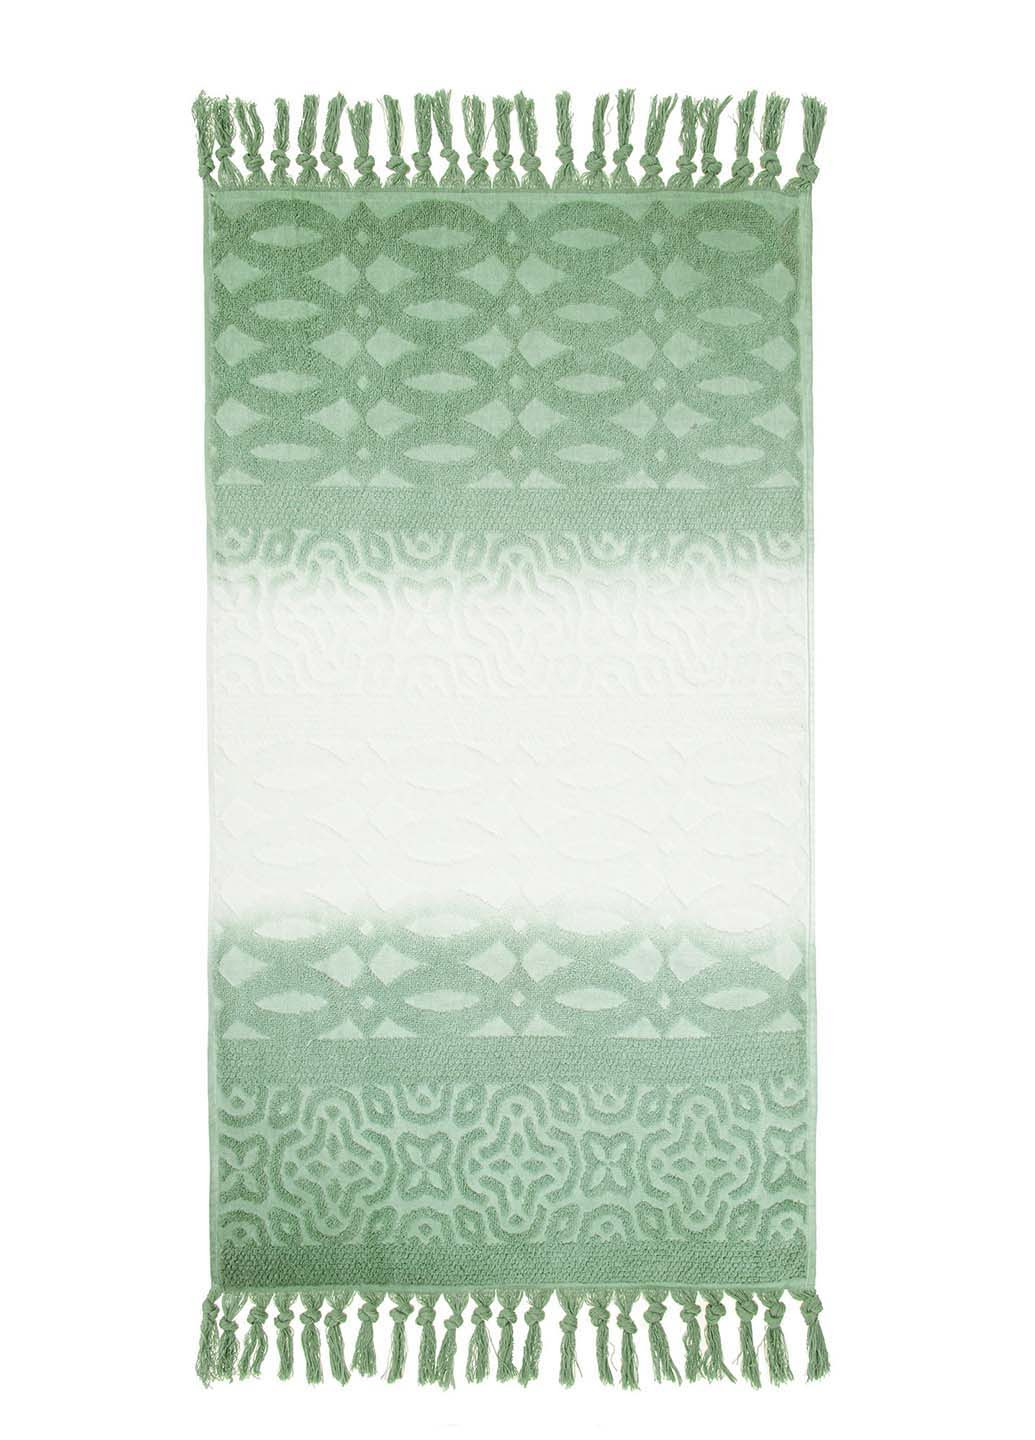 Home Line полотенце, 50х85 см градиент зеленый производство - Турция